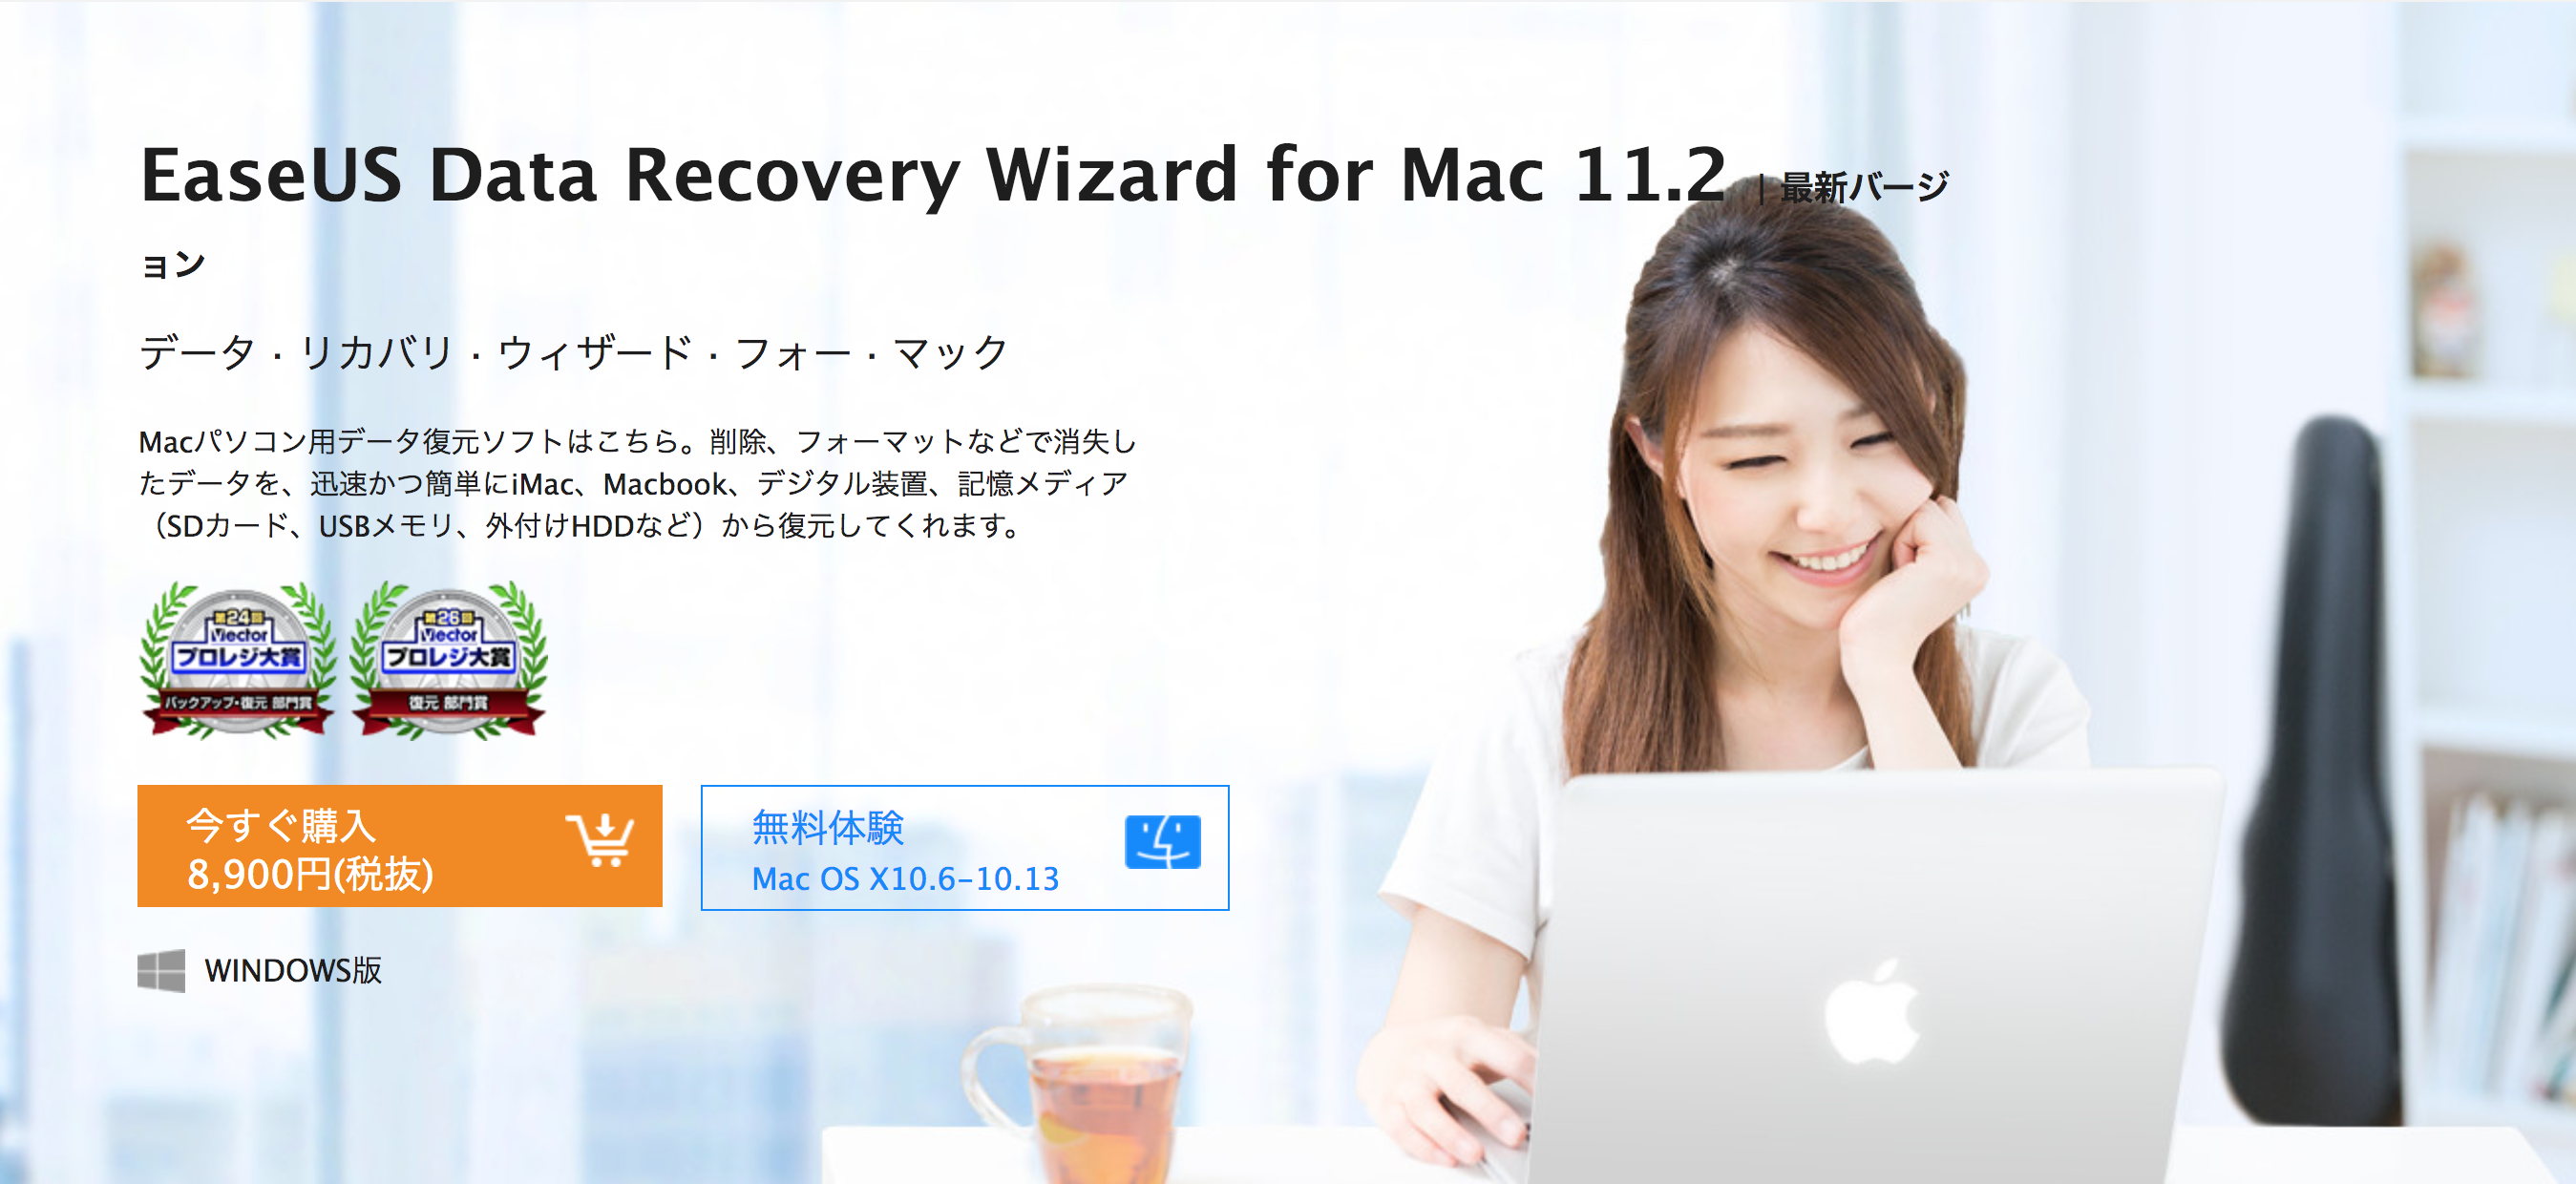 レビュー Easeus Data Recovery Wizard For Mac Pro Mac用データ復元ソフトを試す Rev69 Com